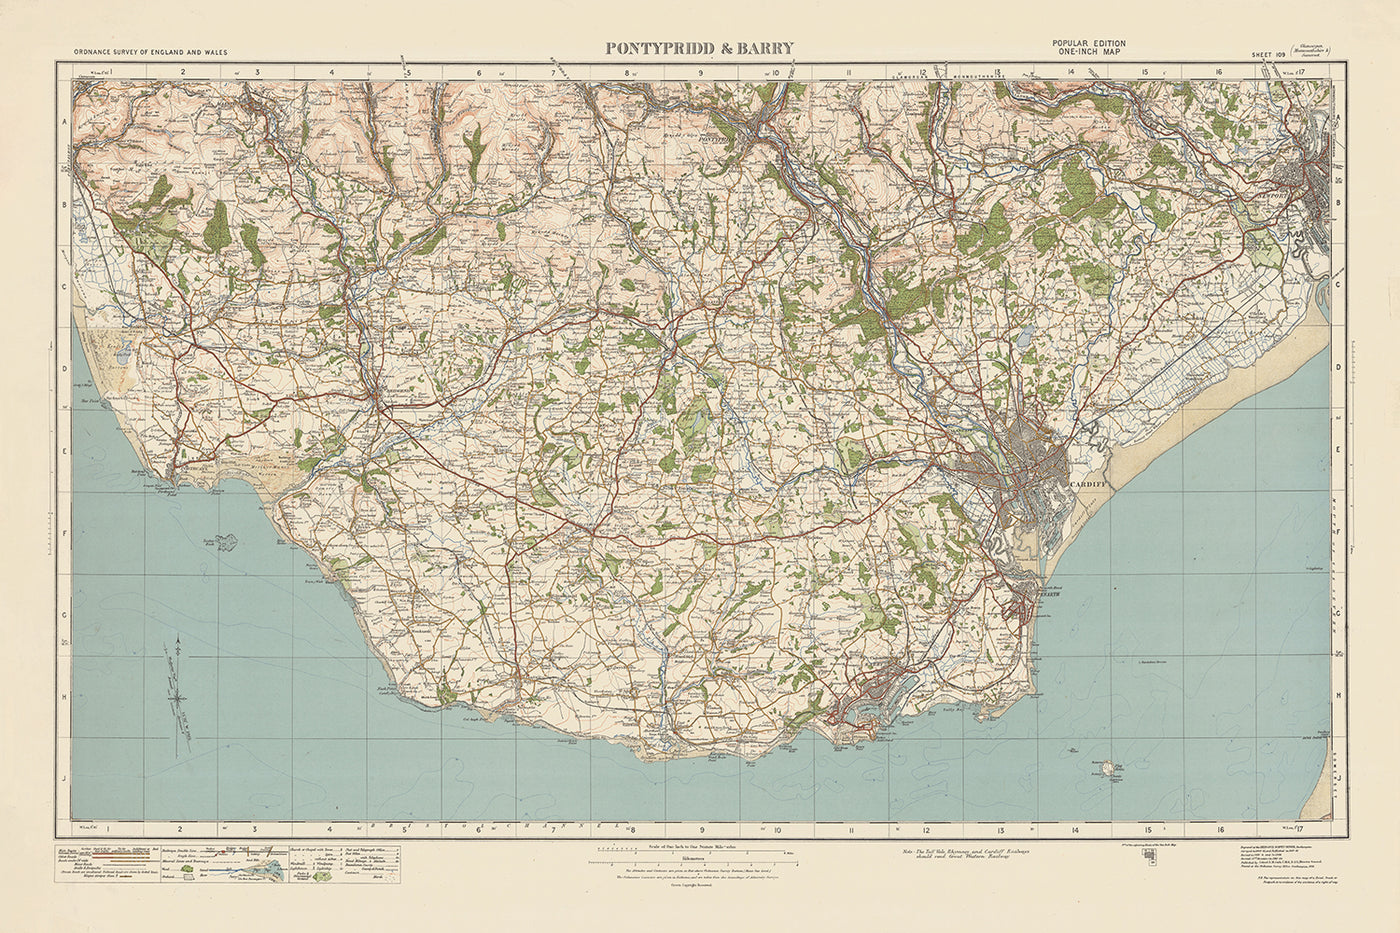 Mapa de Old Ordnance Survey, hoja 109 - Pontypridd & Barry, 1925: Cardiff, Bridgend, Porthcawl, Newport y Caerphilly